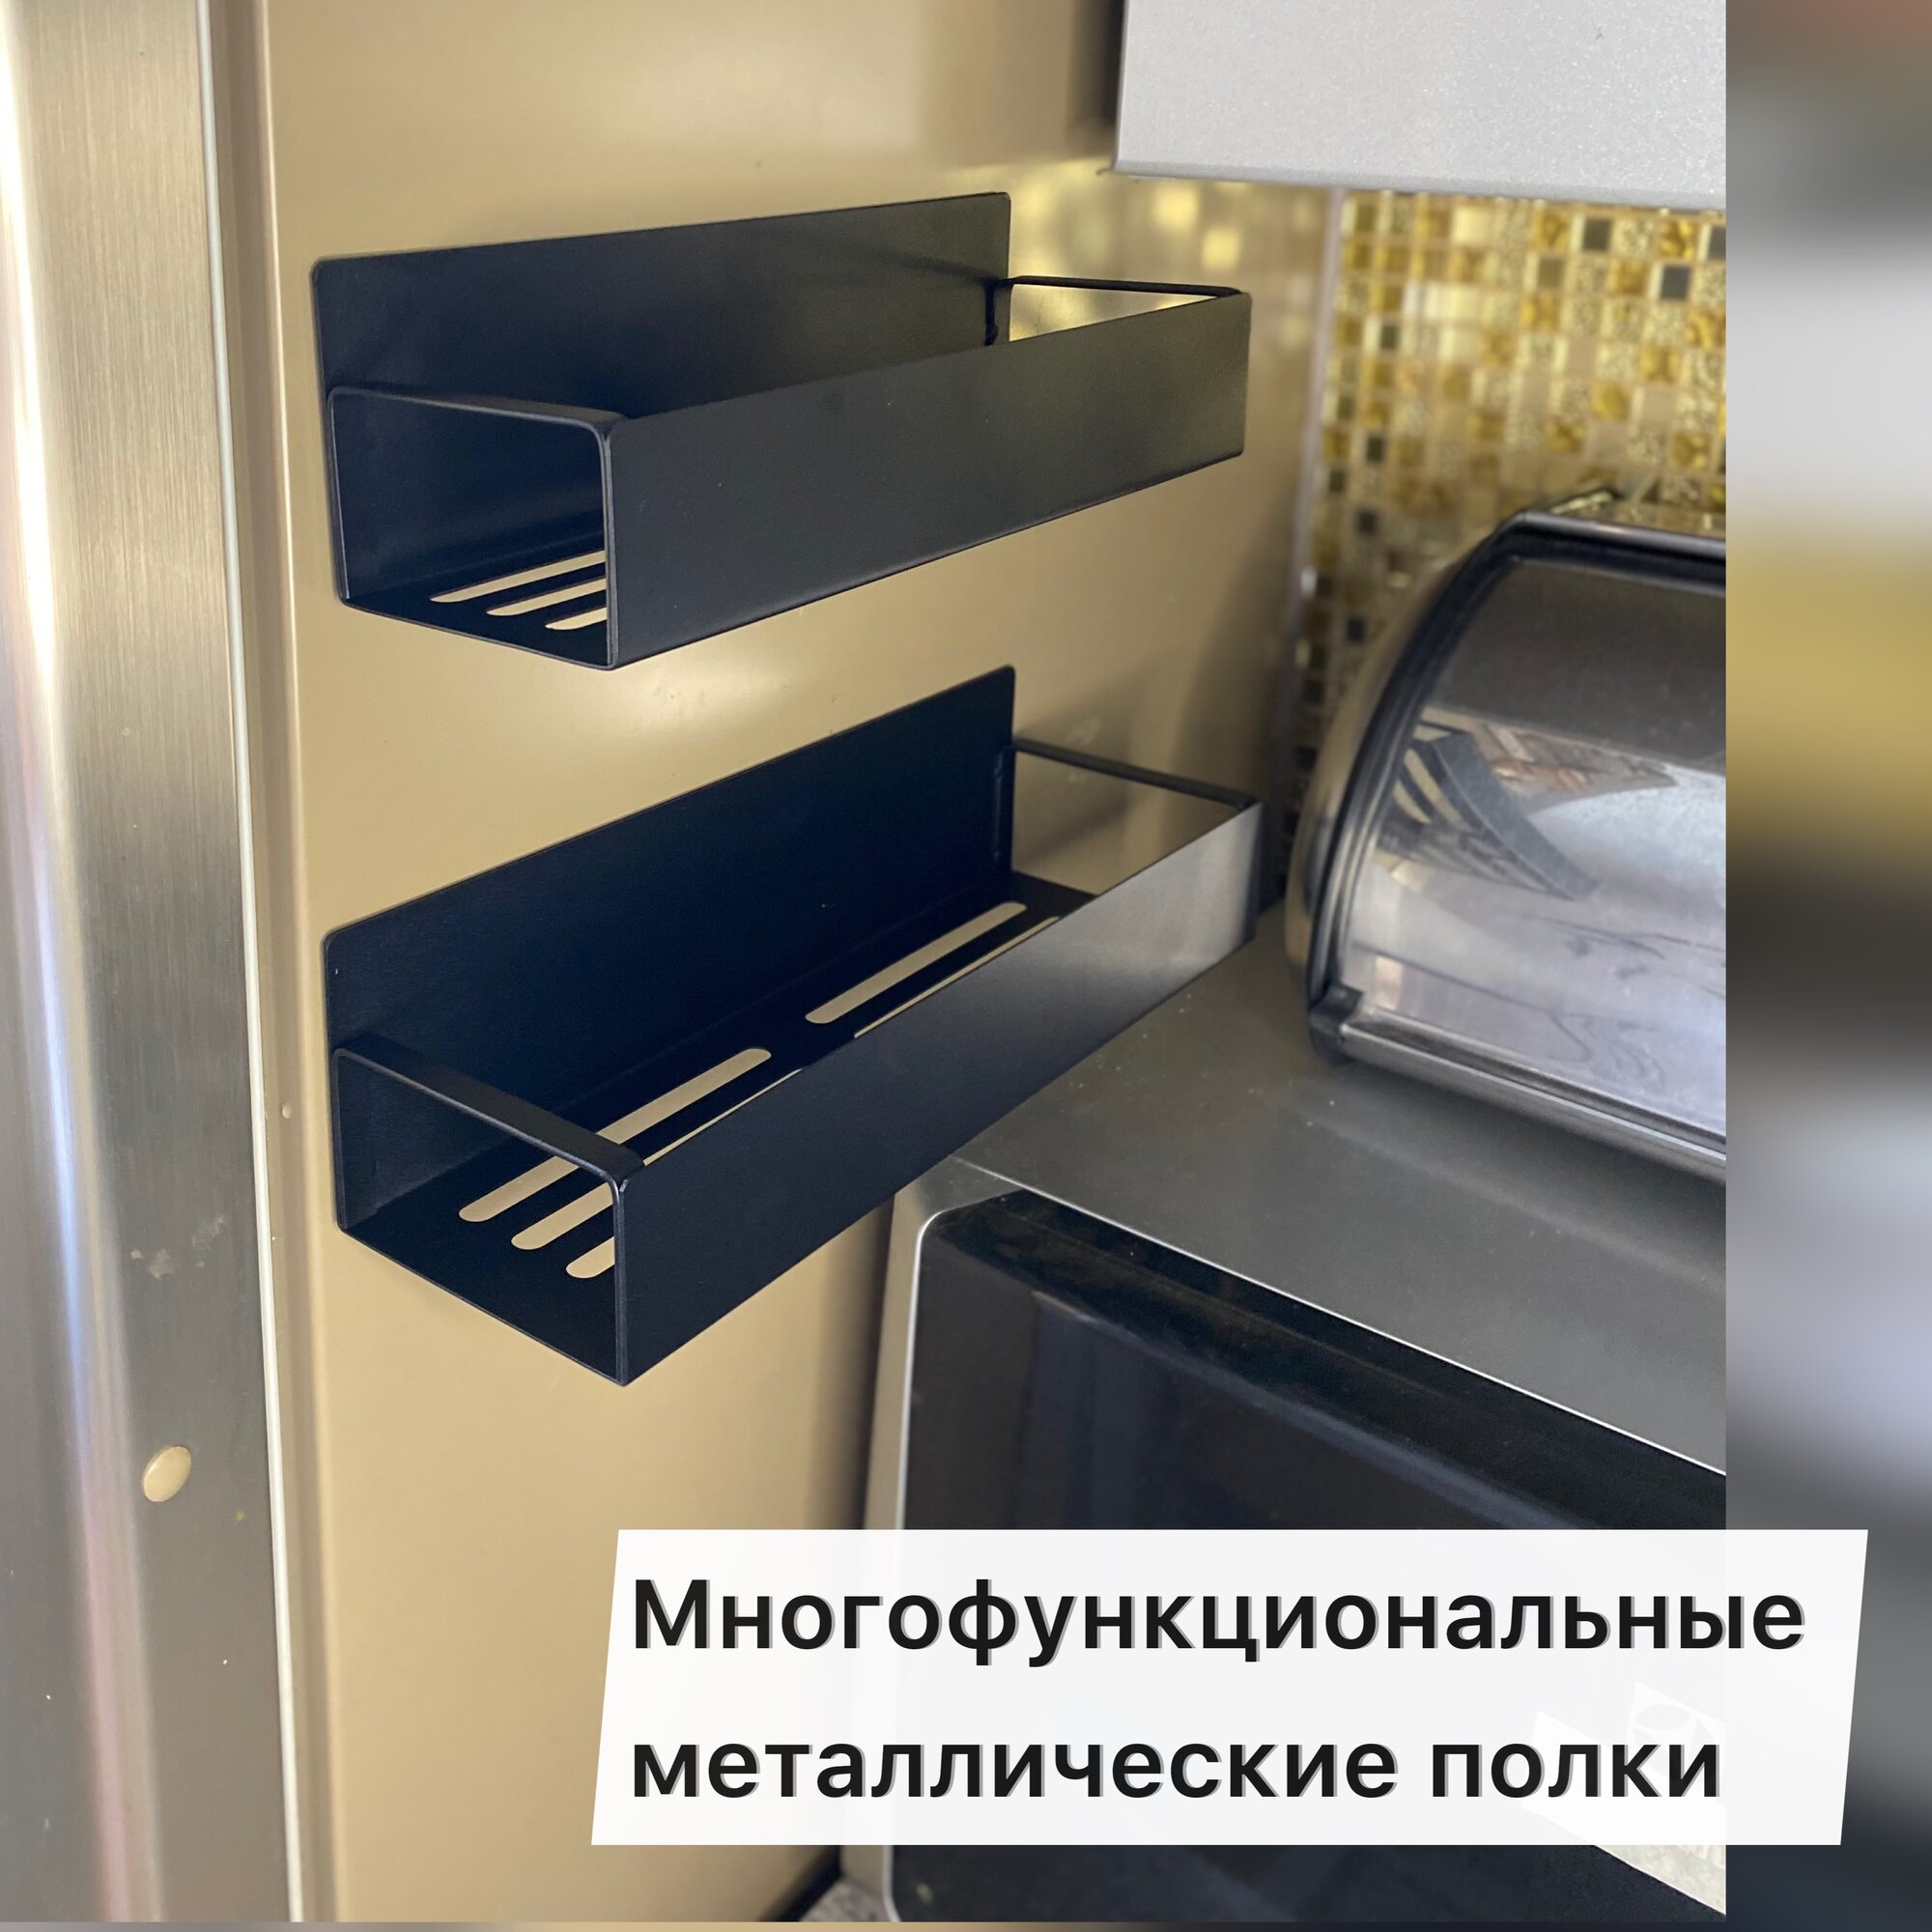 Магнитная полка на холодильник